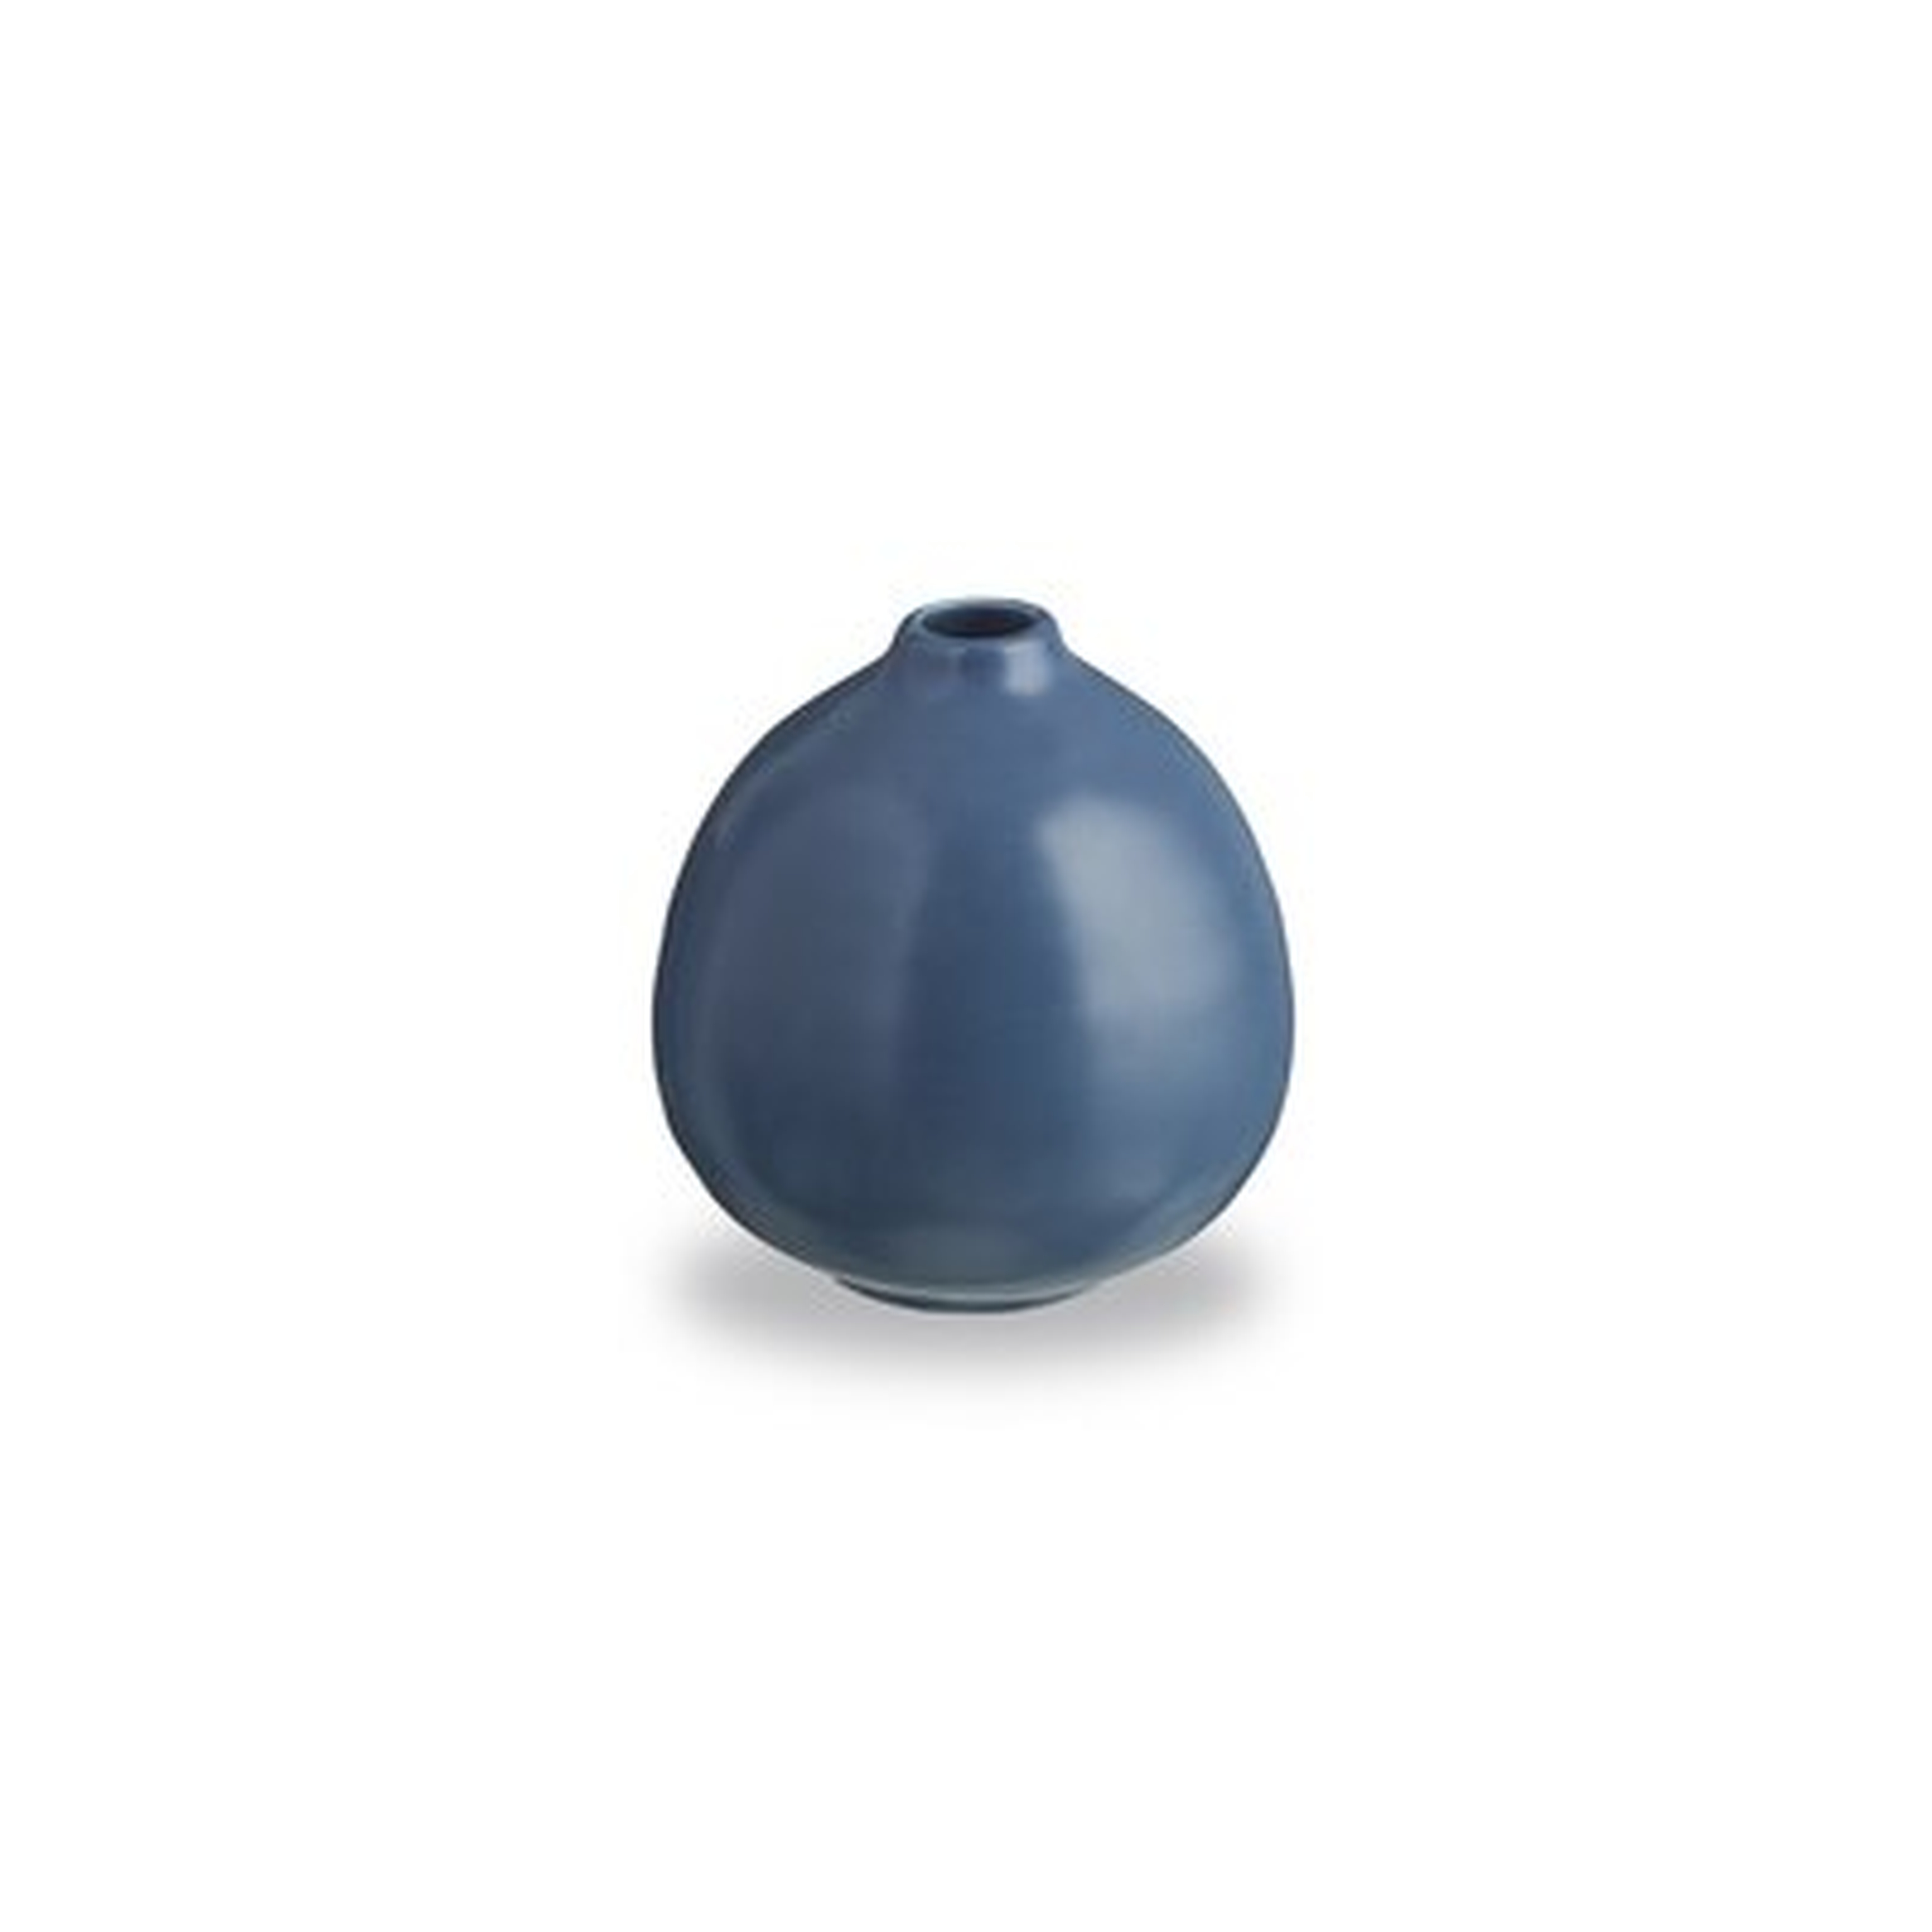 Bloom 4" Ceramic Table Vase - Wayfair